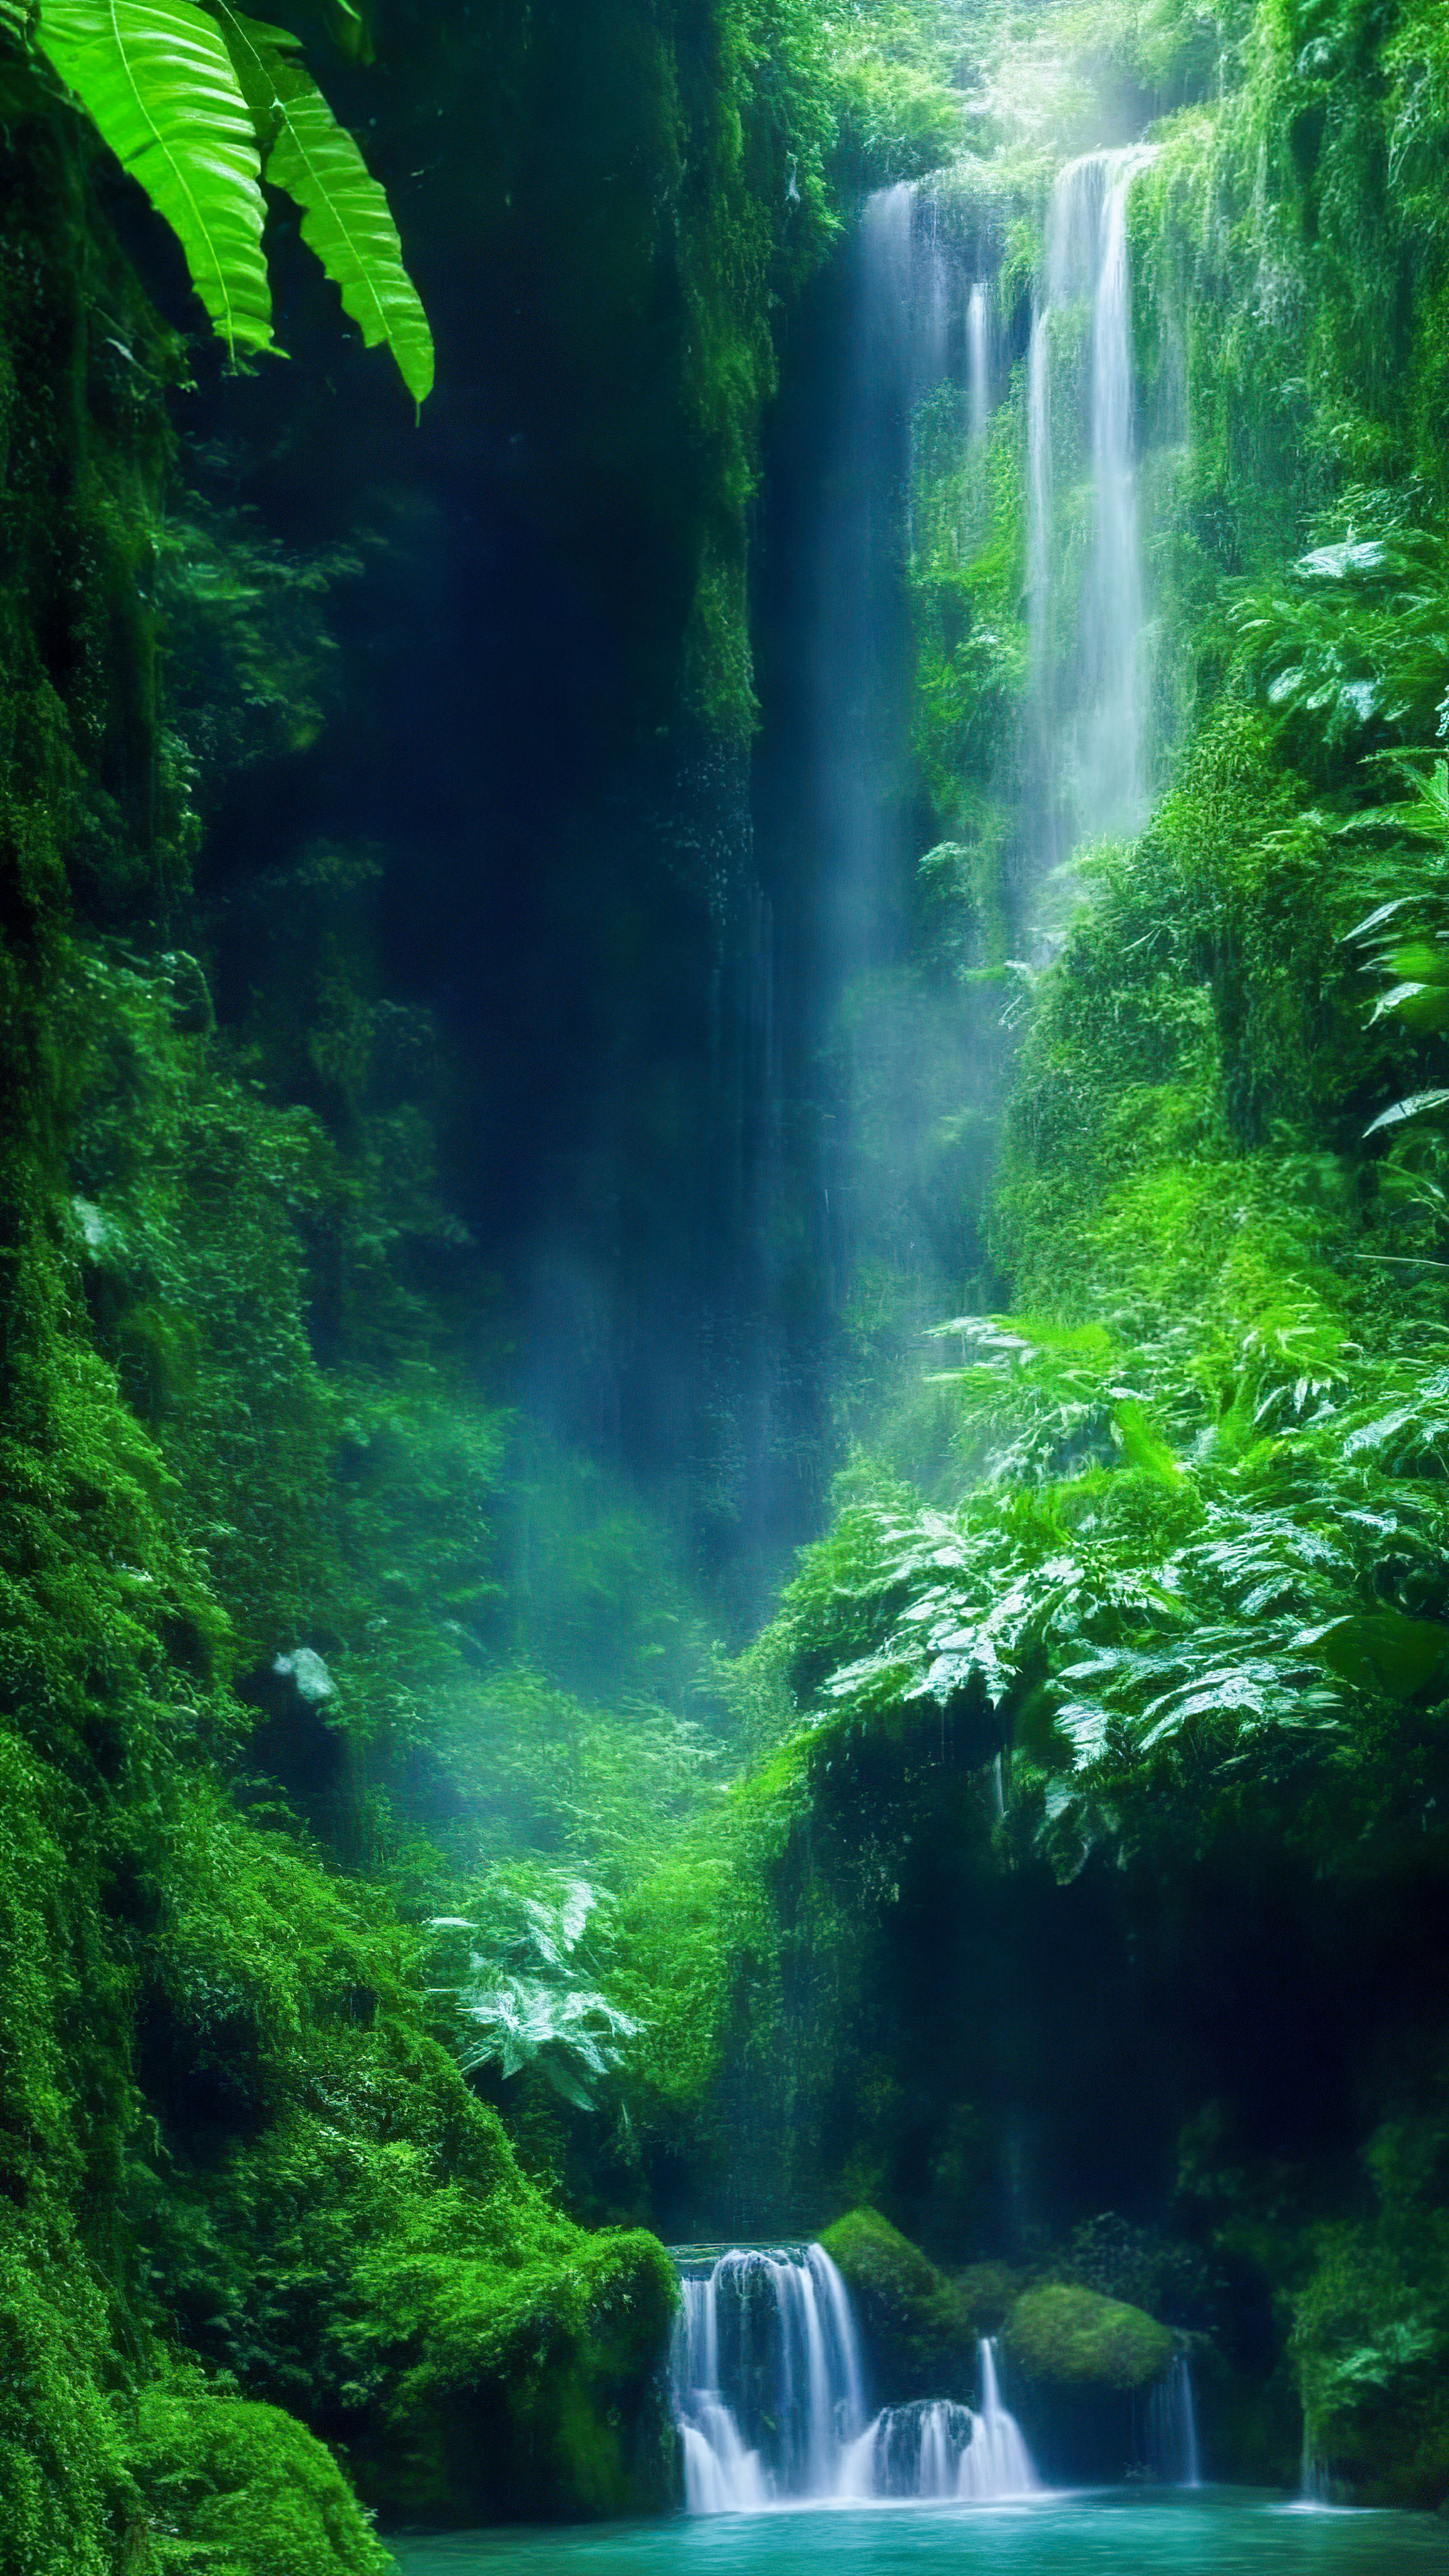 Perdez-vous dans la magie de notre joli fond d'écran esthétique de paysage, présentant une cascade mystique enchantée cachée au plus profond de la forêt tropicale verdoyante.